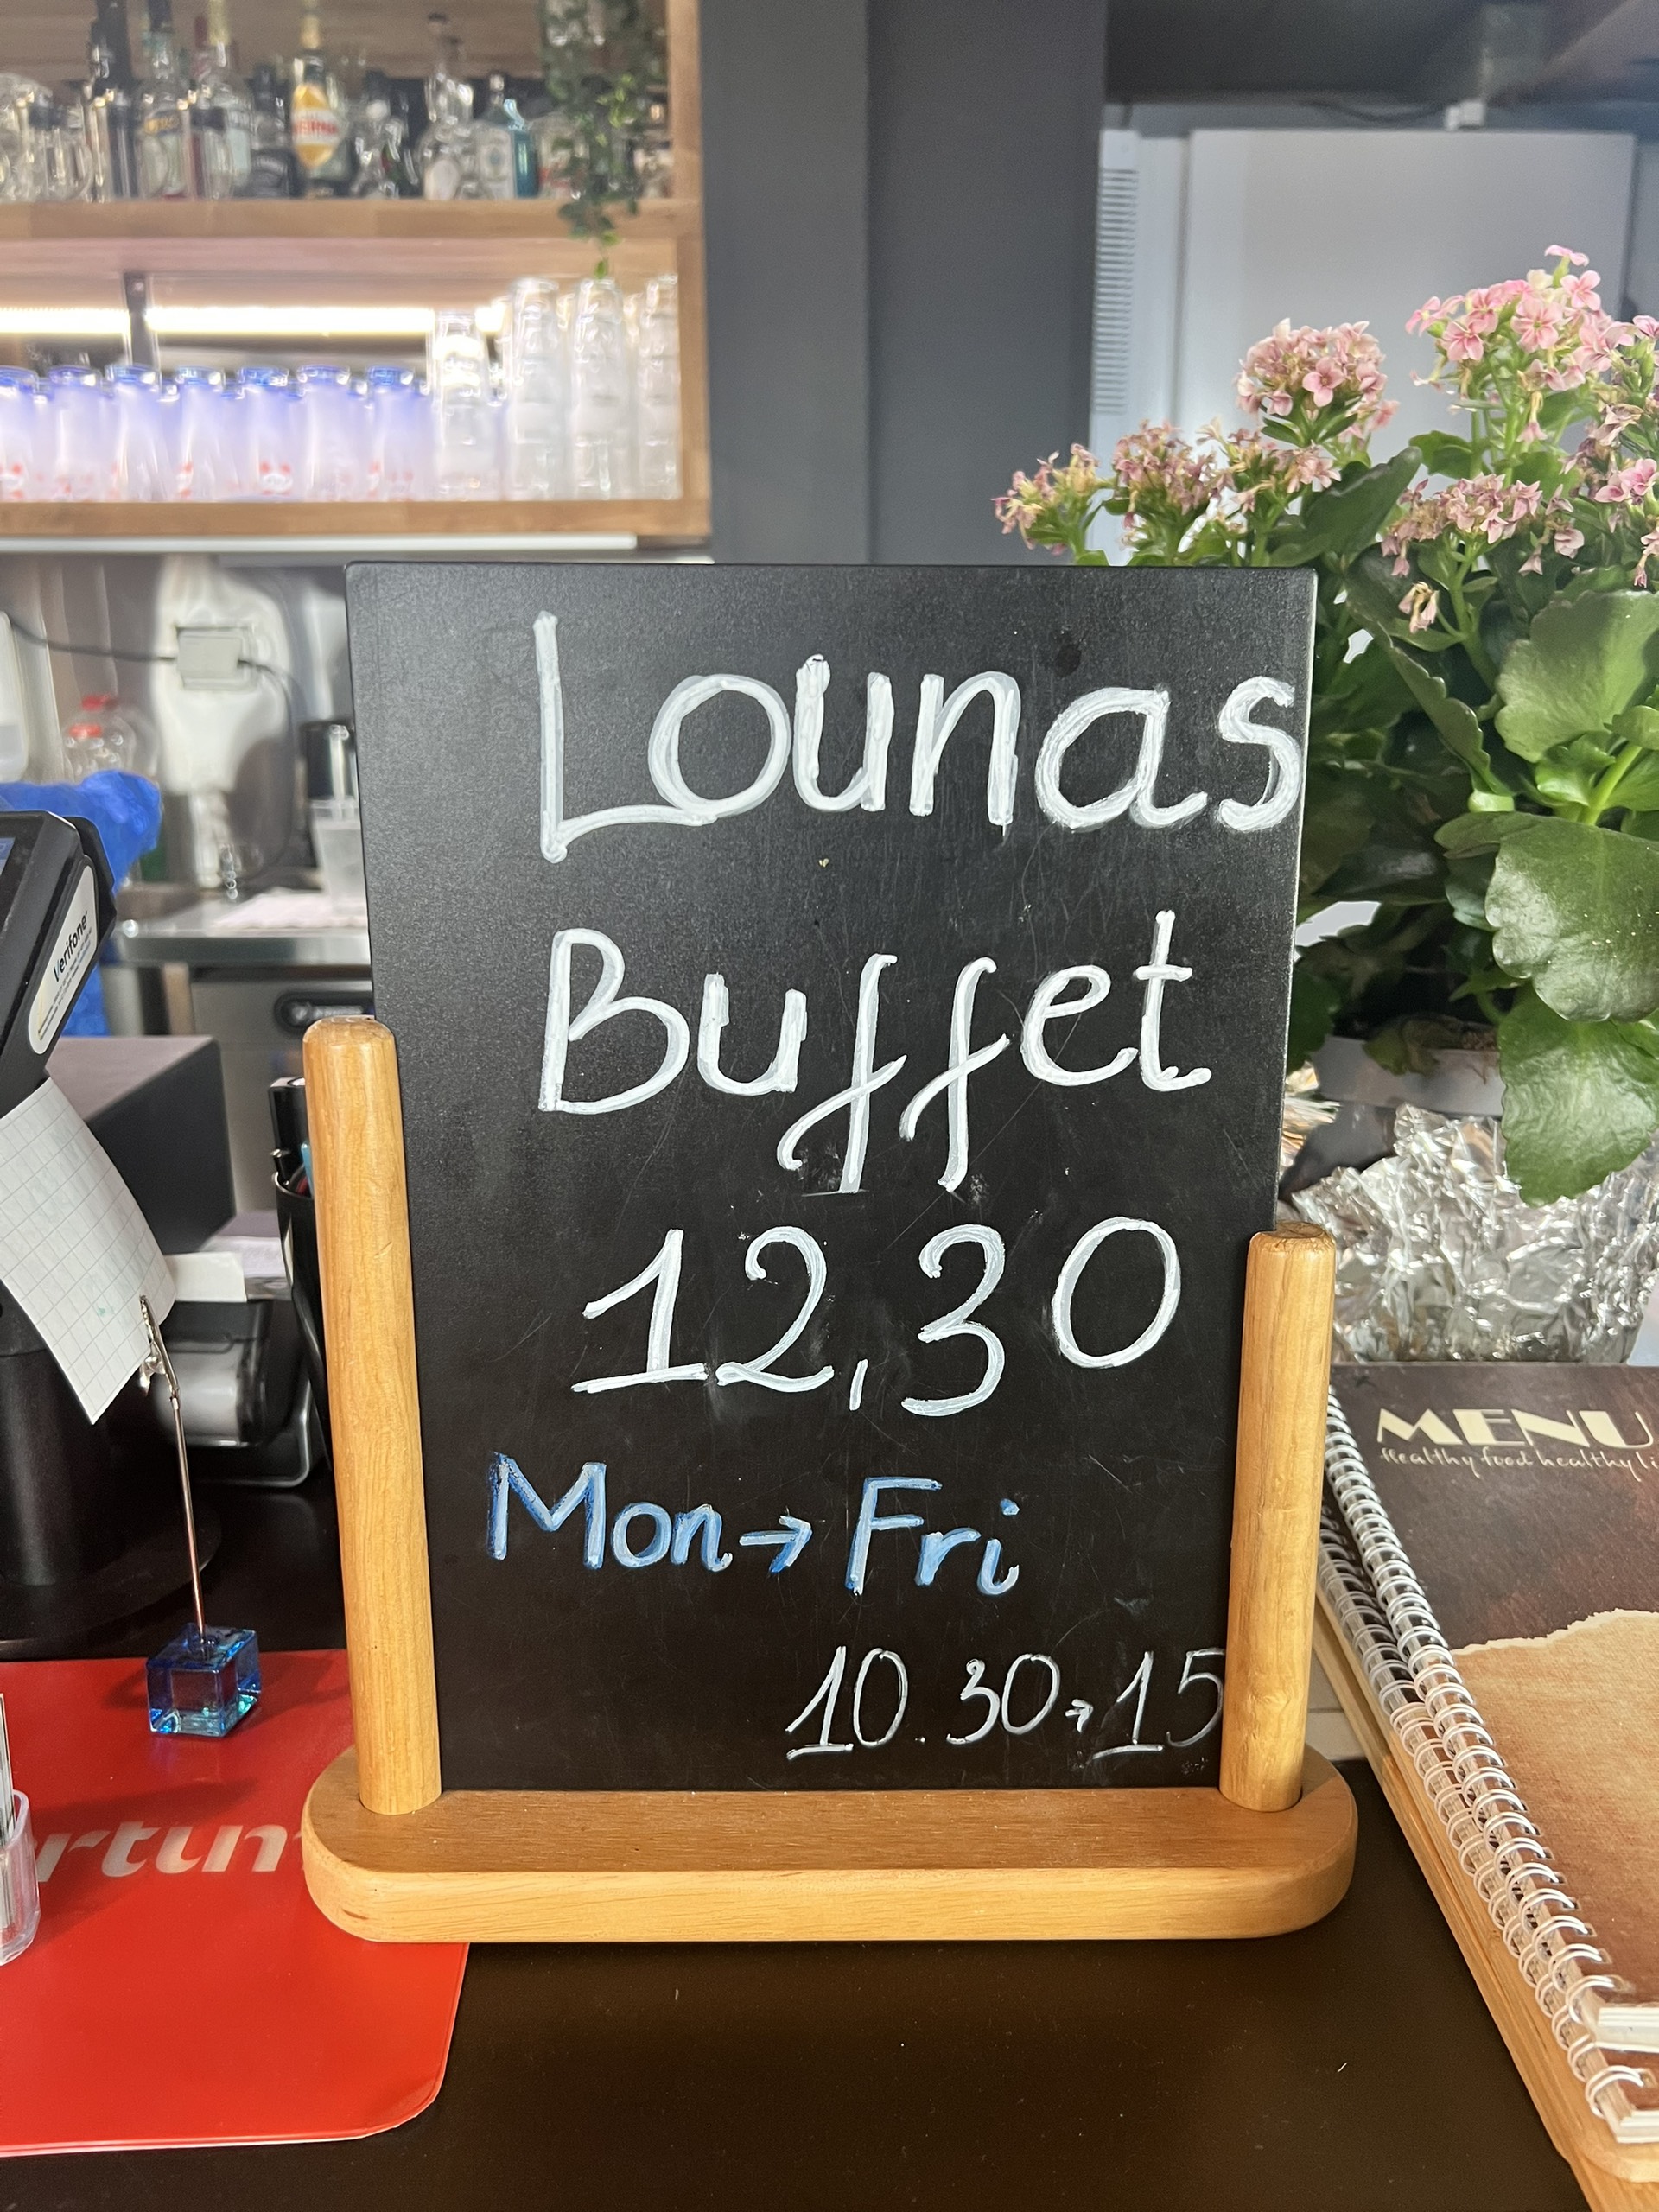 Lounas Buffet (Monday ->Friday)